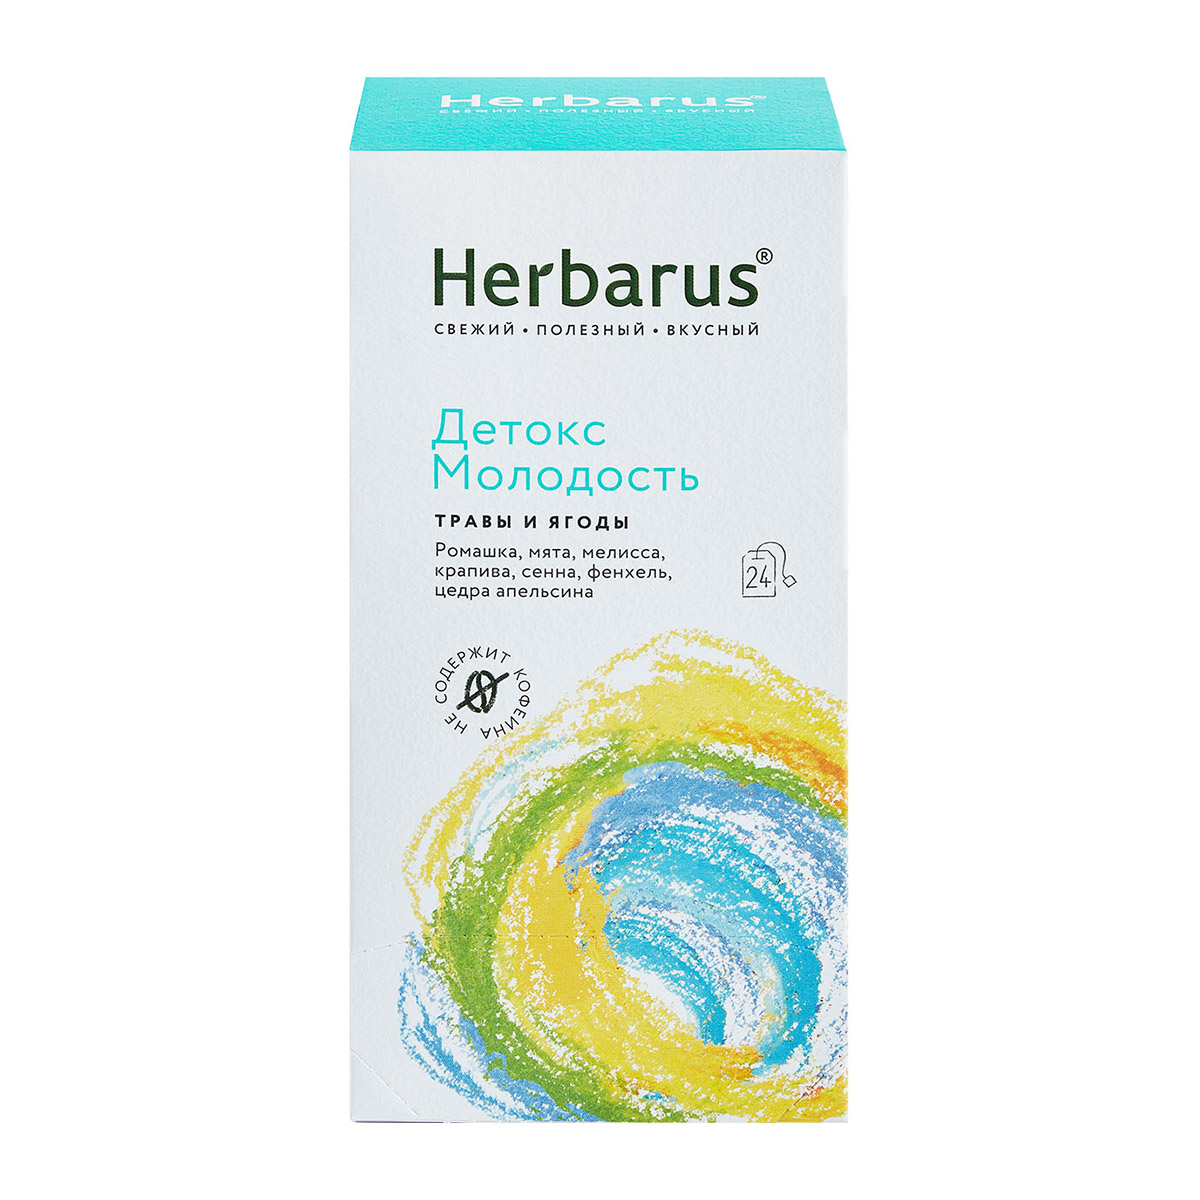 Herbarus Чайный напиток Детокс и молодость, 24 х 1,8 г (Herbarus, Травы и ягоды) чайный напиток herbarus детокс молодость 24 пакетика